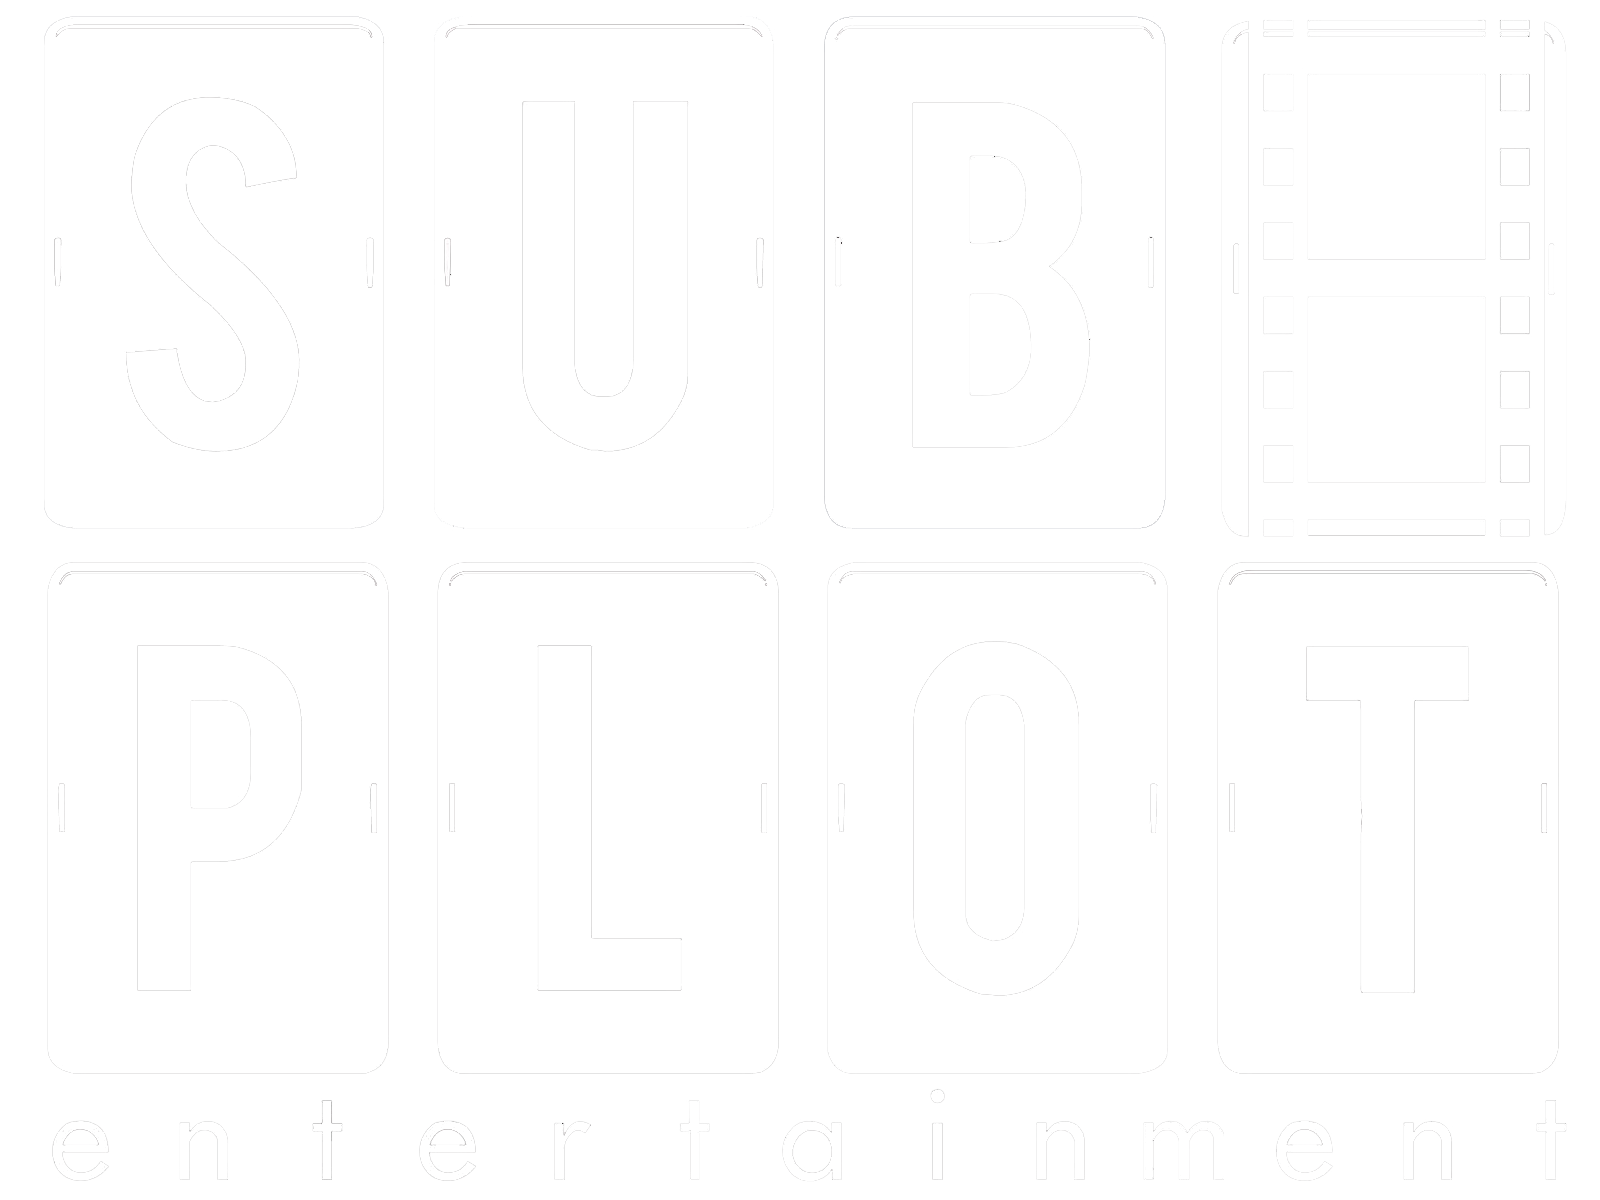 Subplot Entertainment